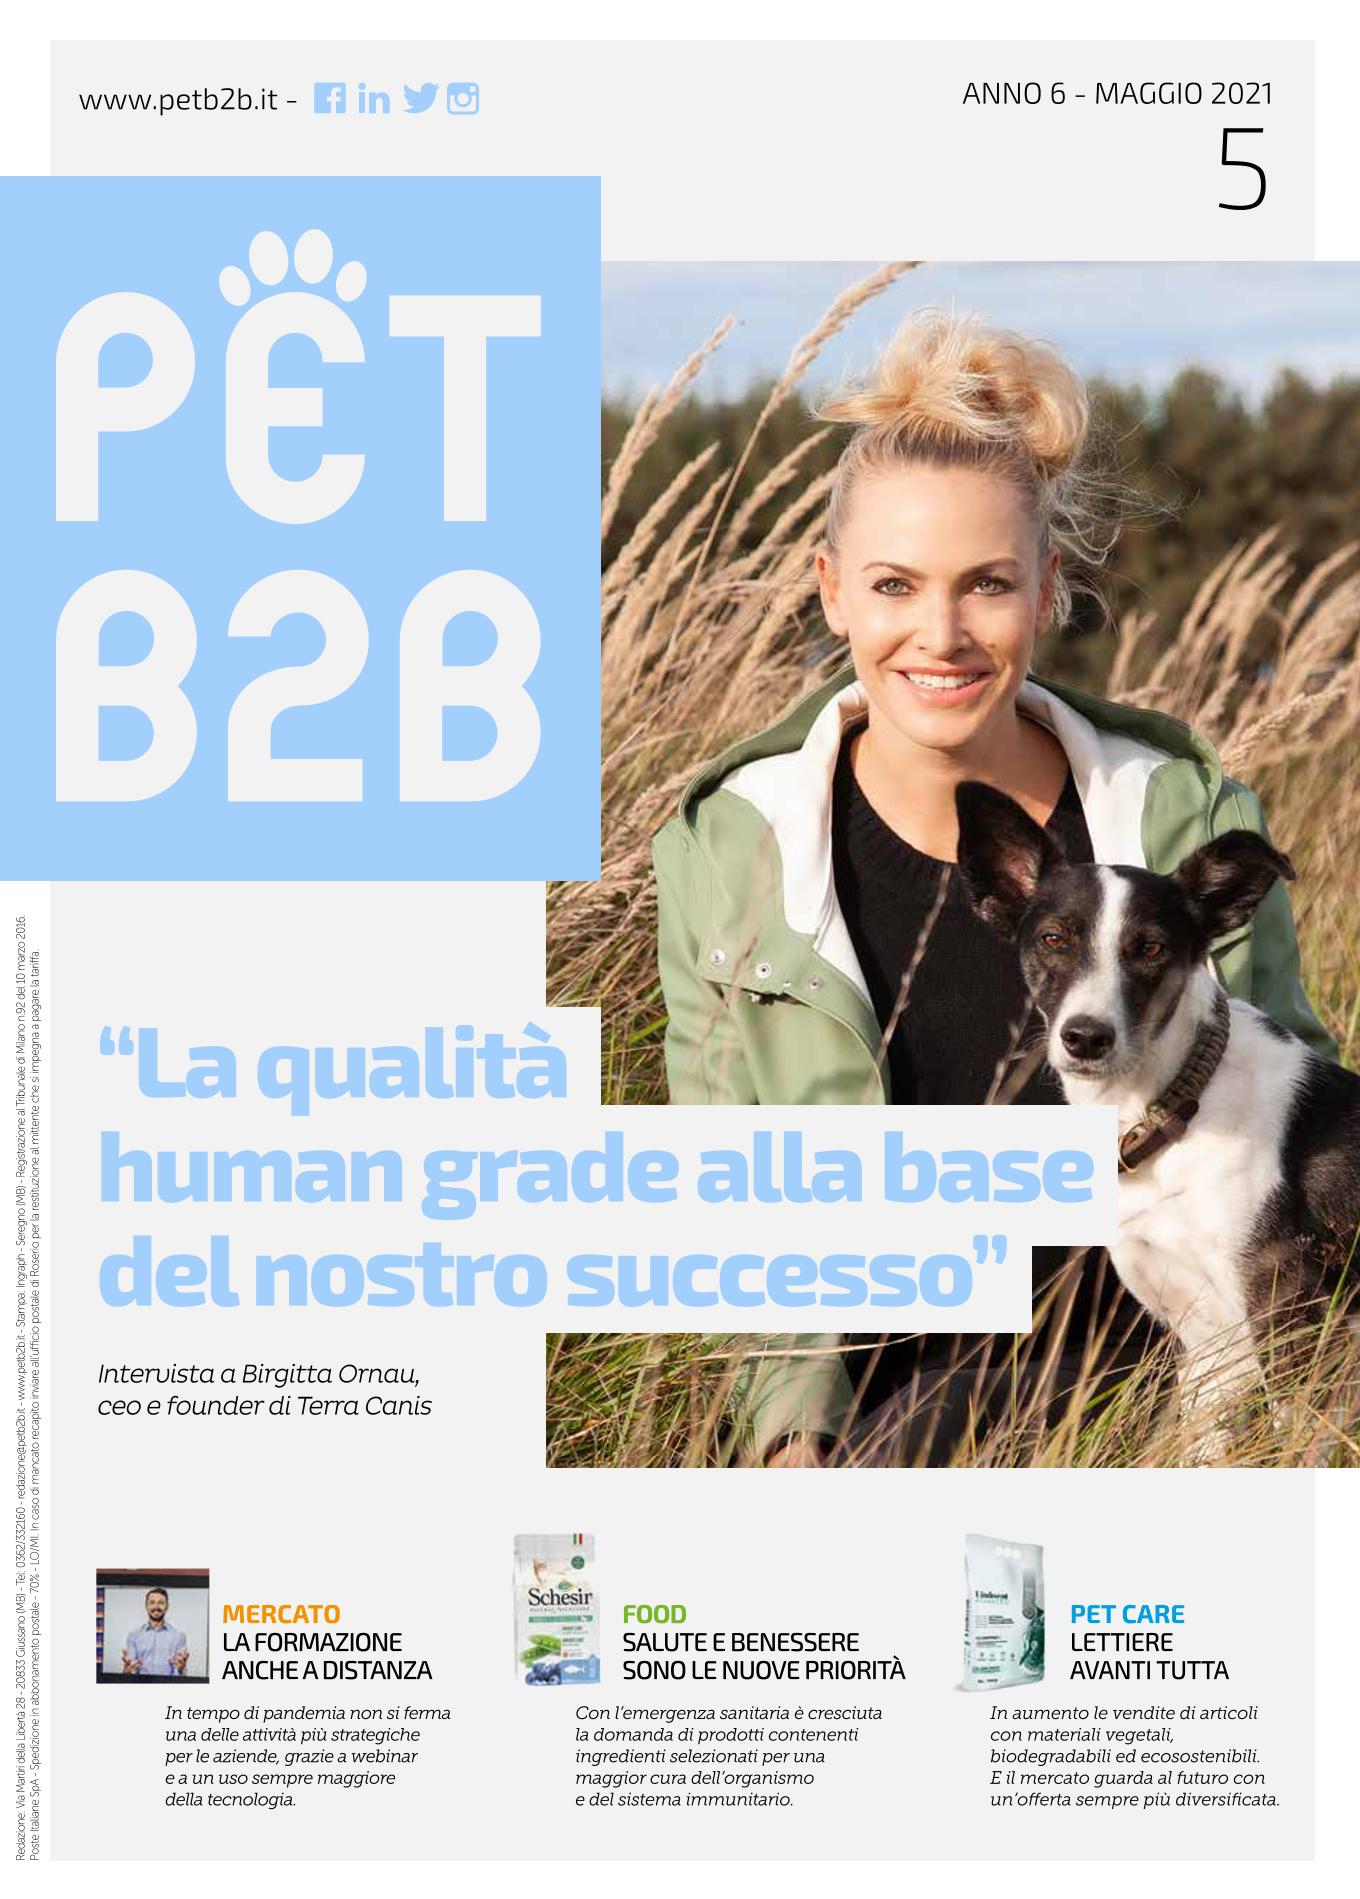 Pet B2B, Italien